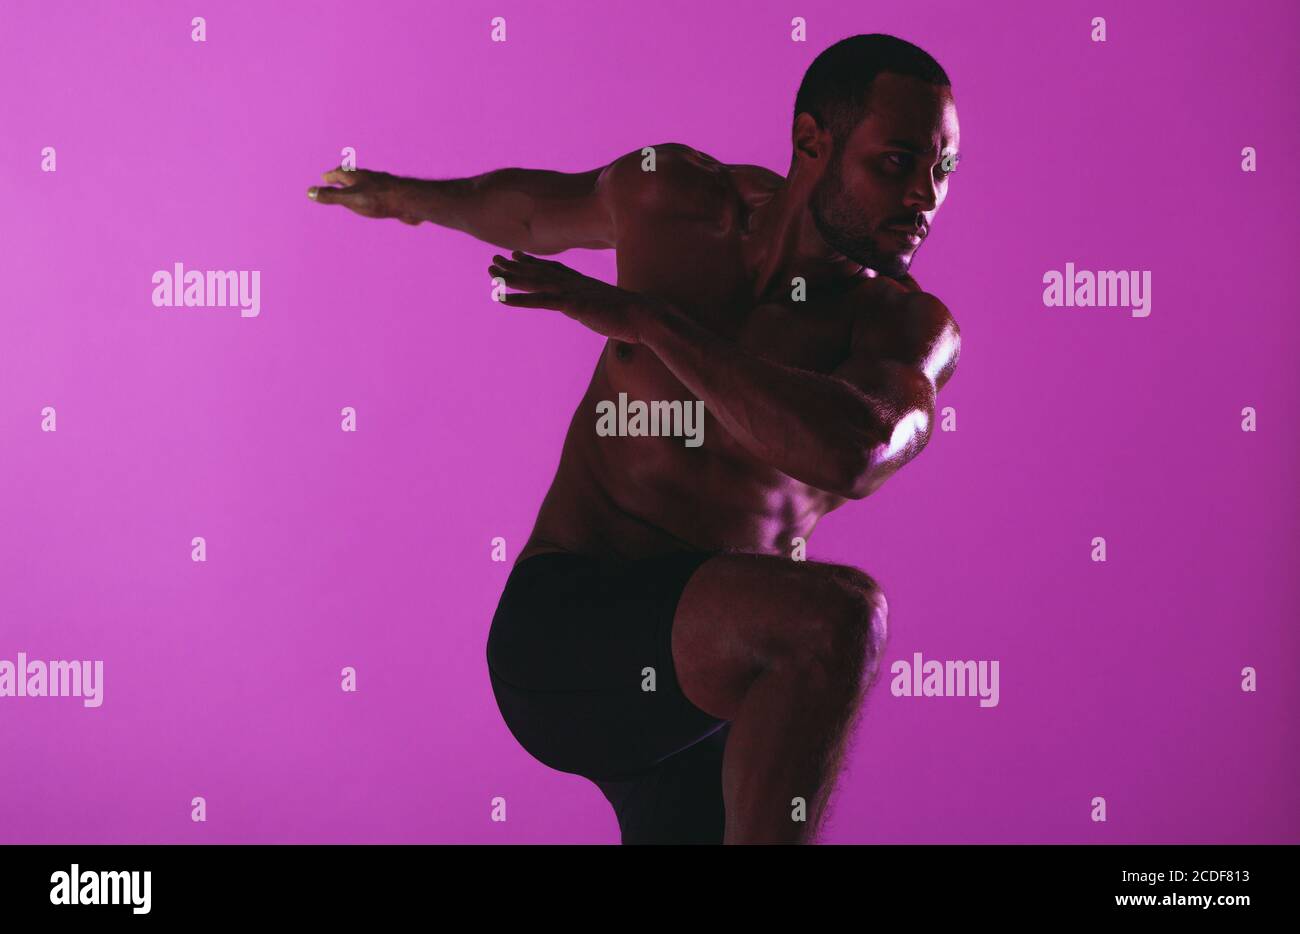 Fokussierter Sportler beim Fitnesstraining. Monochrome Fitness-Porträt von sportlichen Mann arbeiten auf lila Hintergrund. Stockfoto